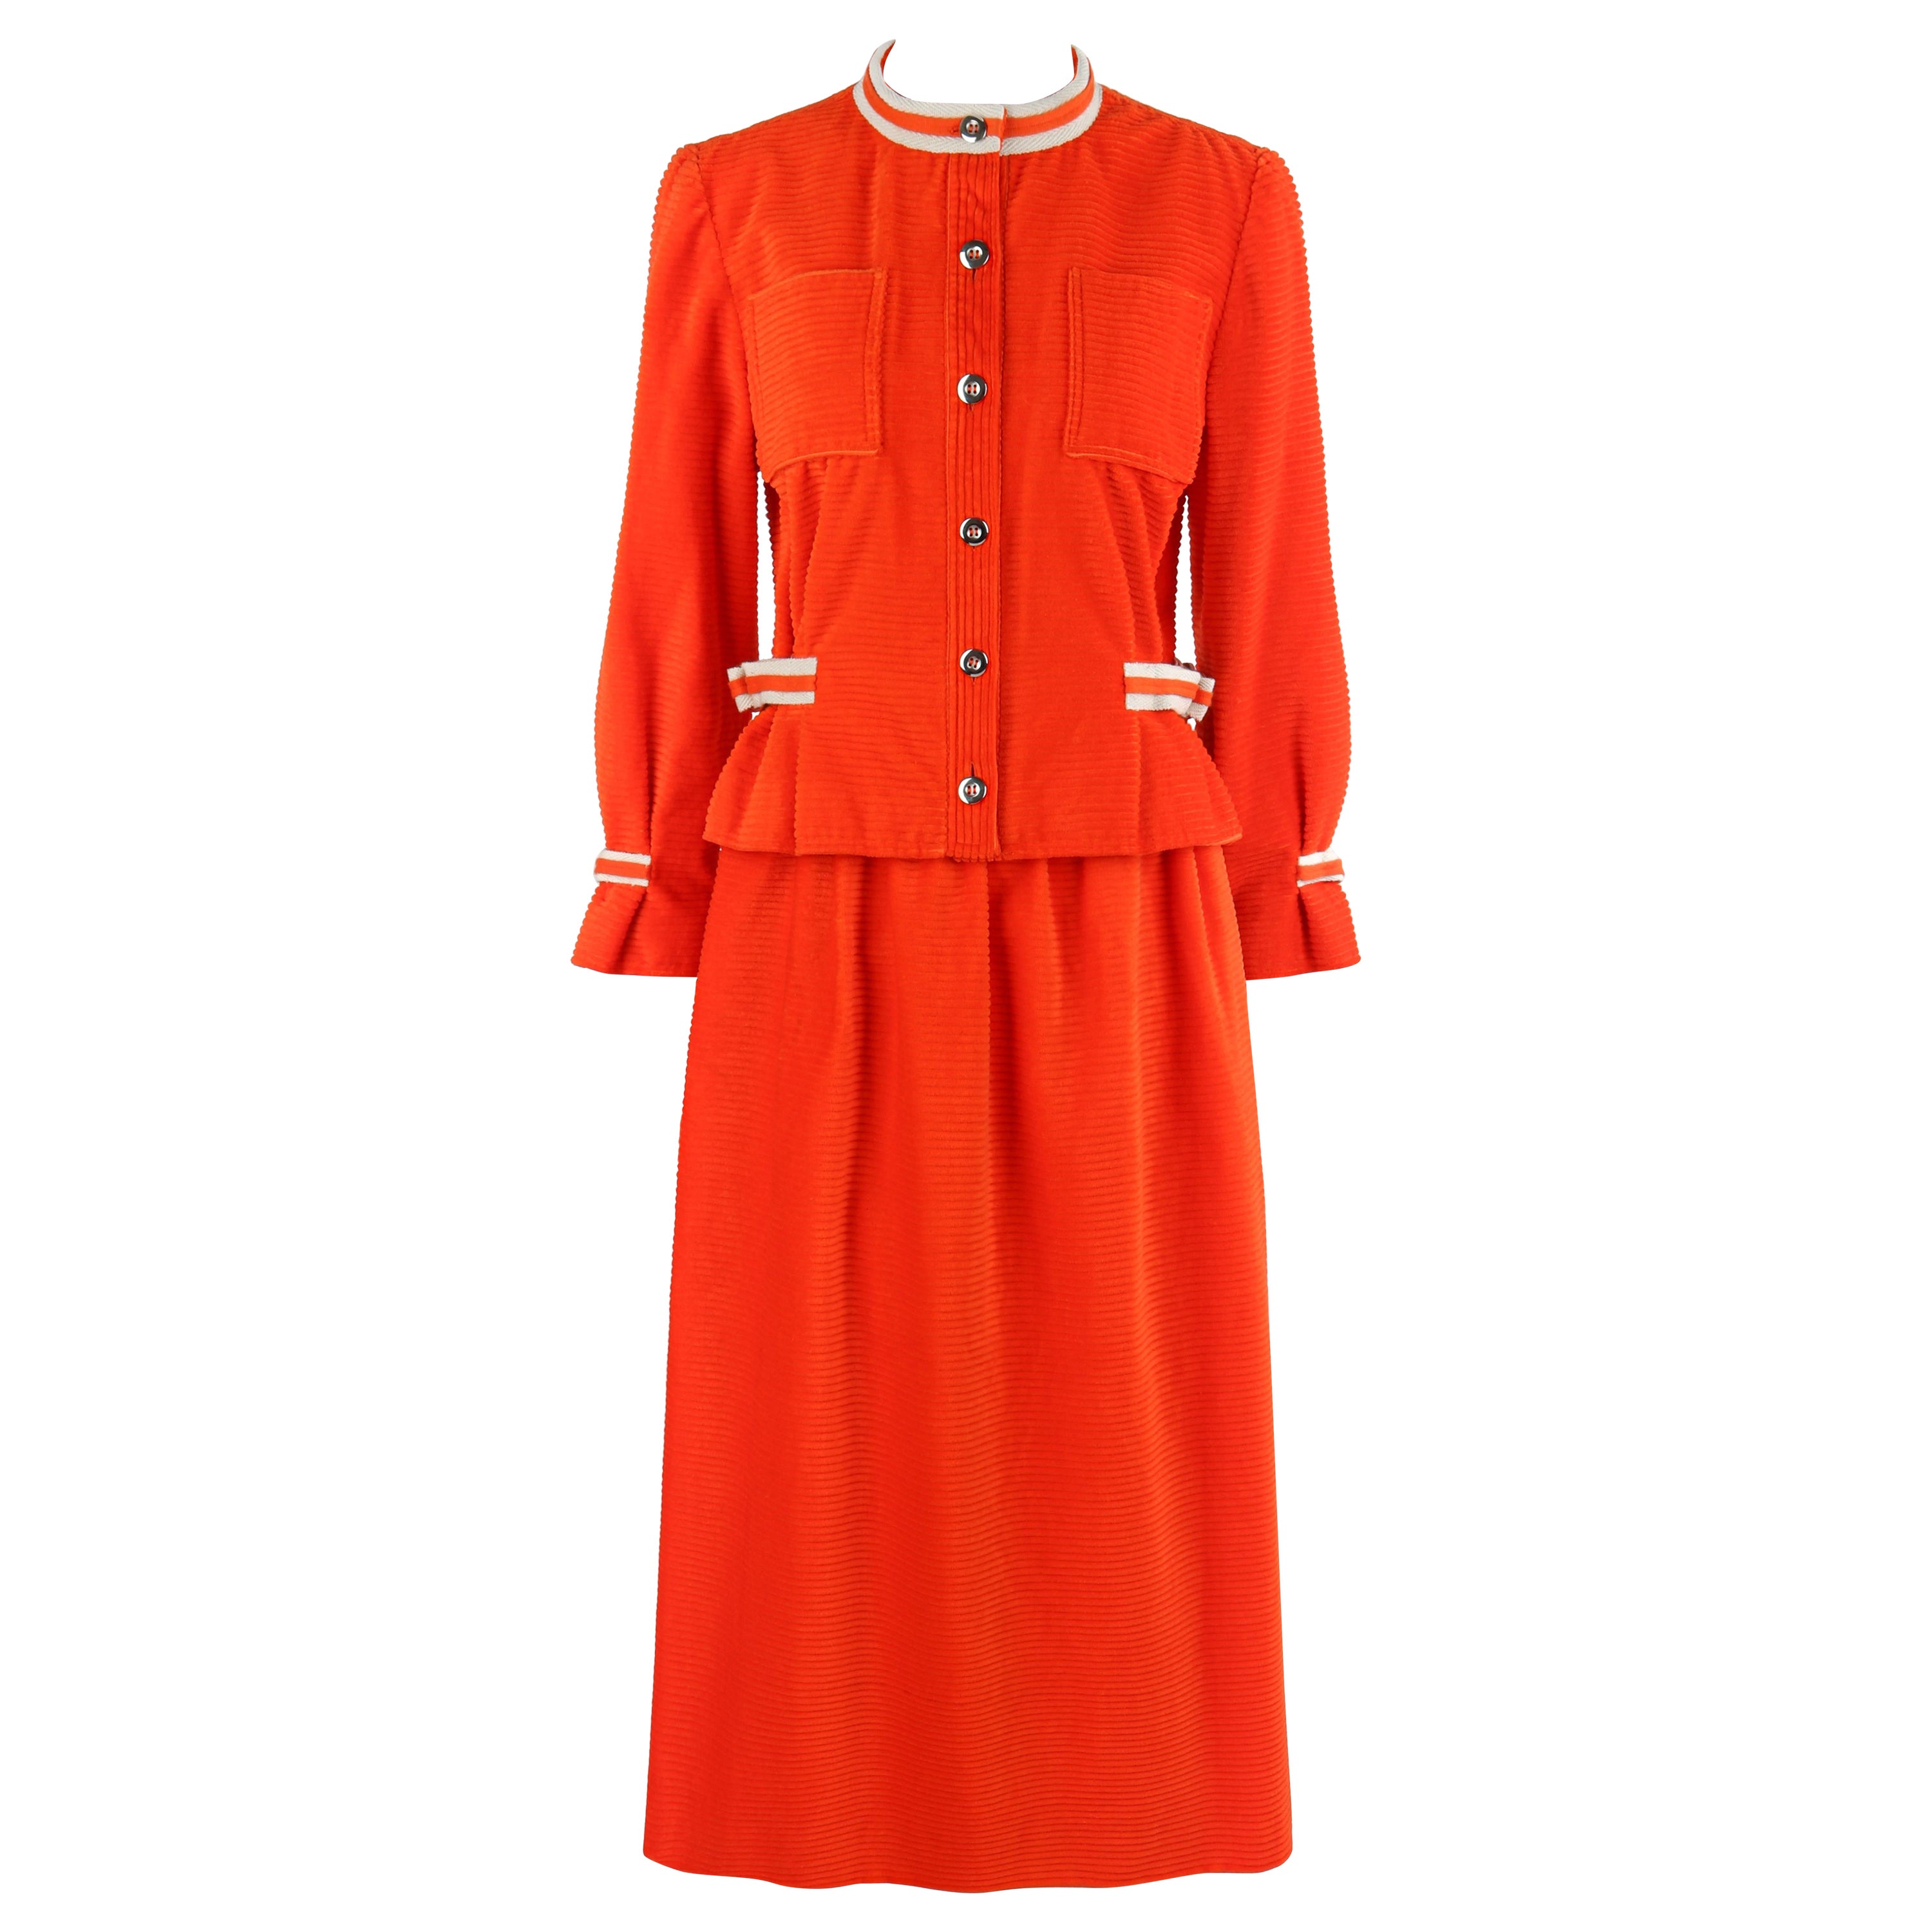 COURREGES c.1970's Orange Corduroy Button Up Jacket Blazer Skirt Suit Set w/Tags For Sale